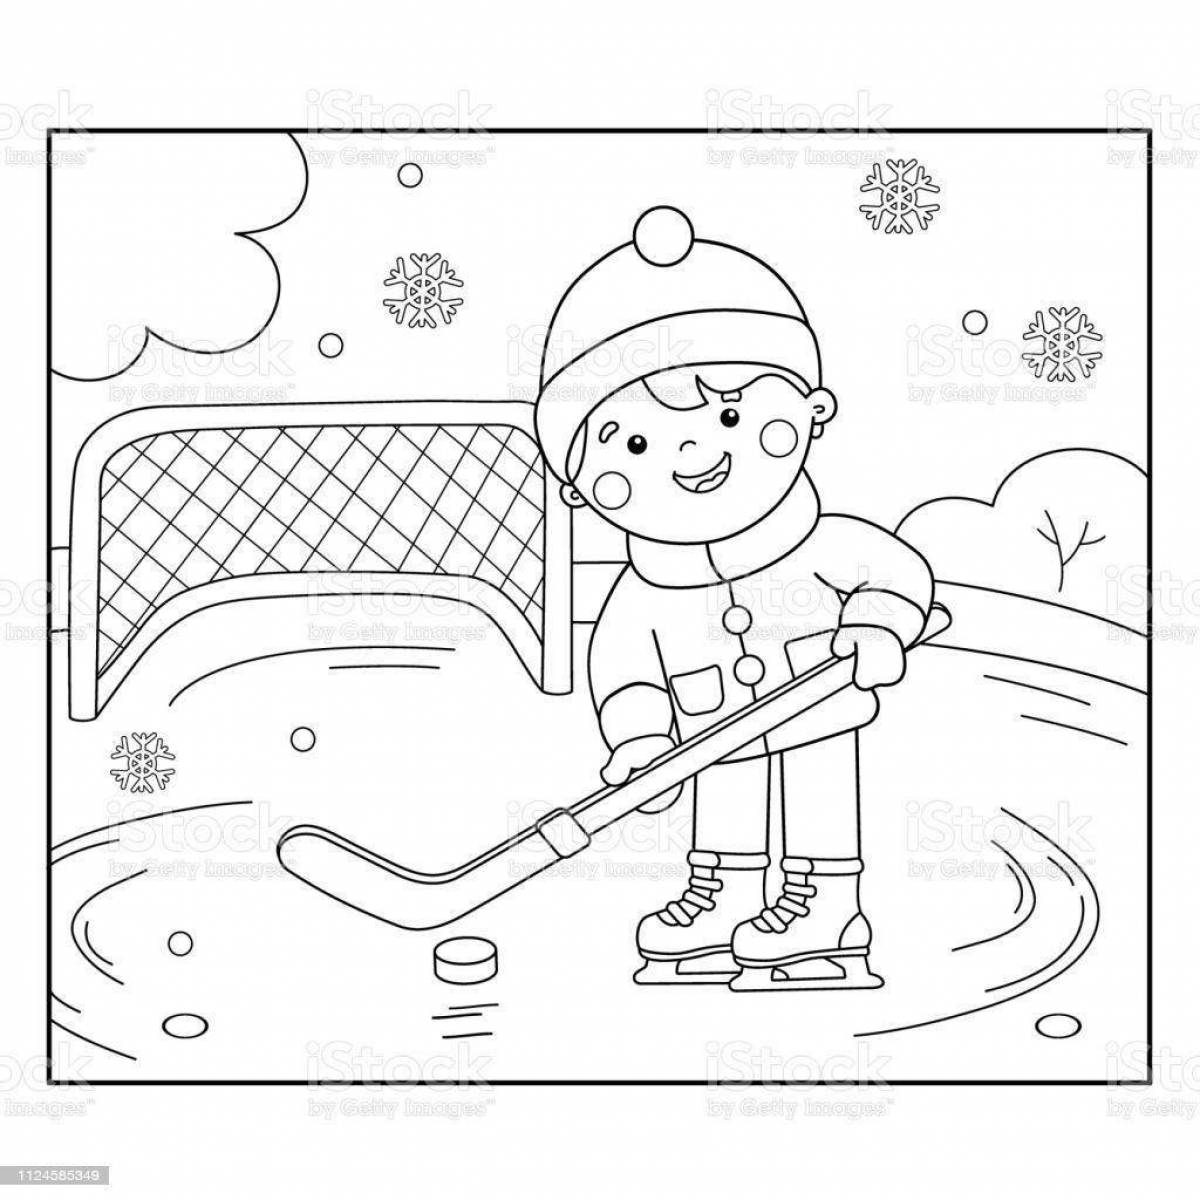 Ослепительная картинка о зимних видах спорта для детей в детском саду